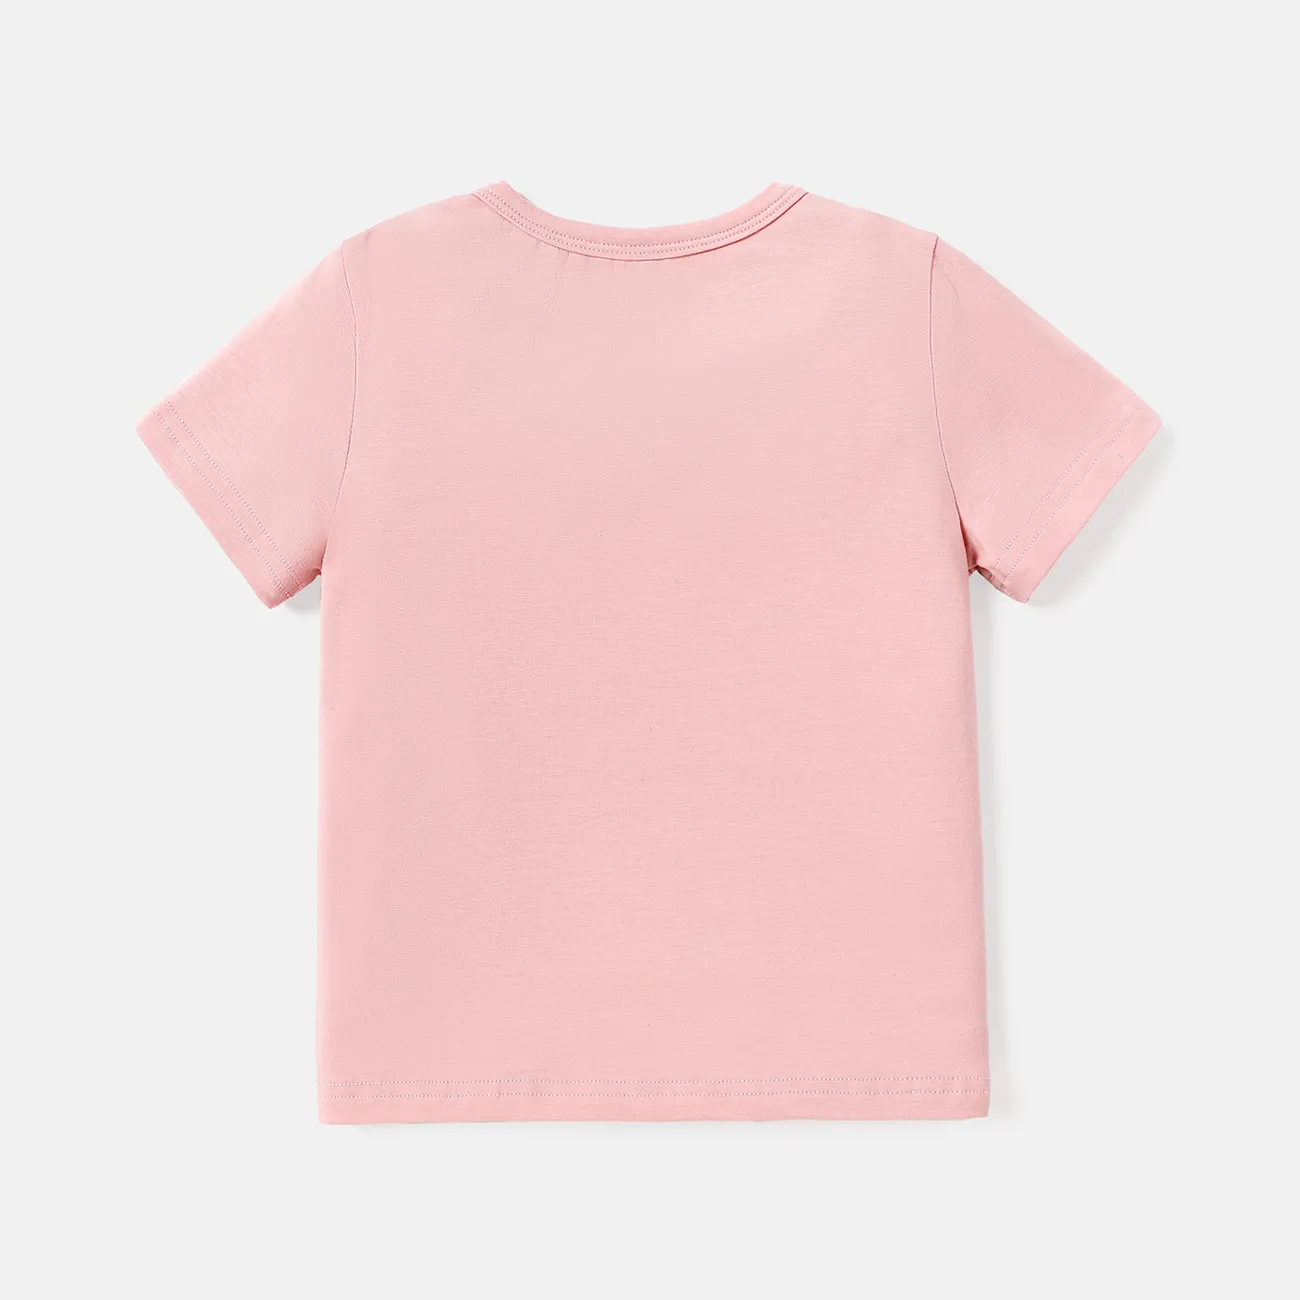 camiseta de algodón de manga corta con estampado de letras para niños pequeños/niños Rosado big image 1